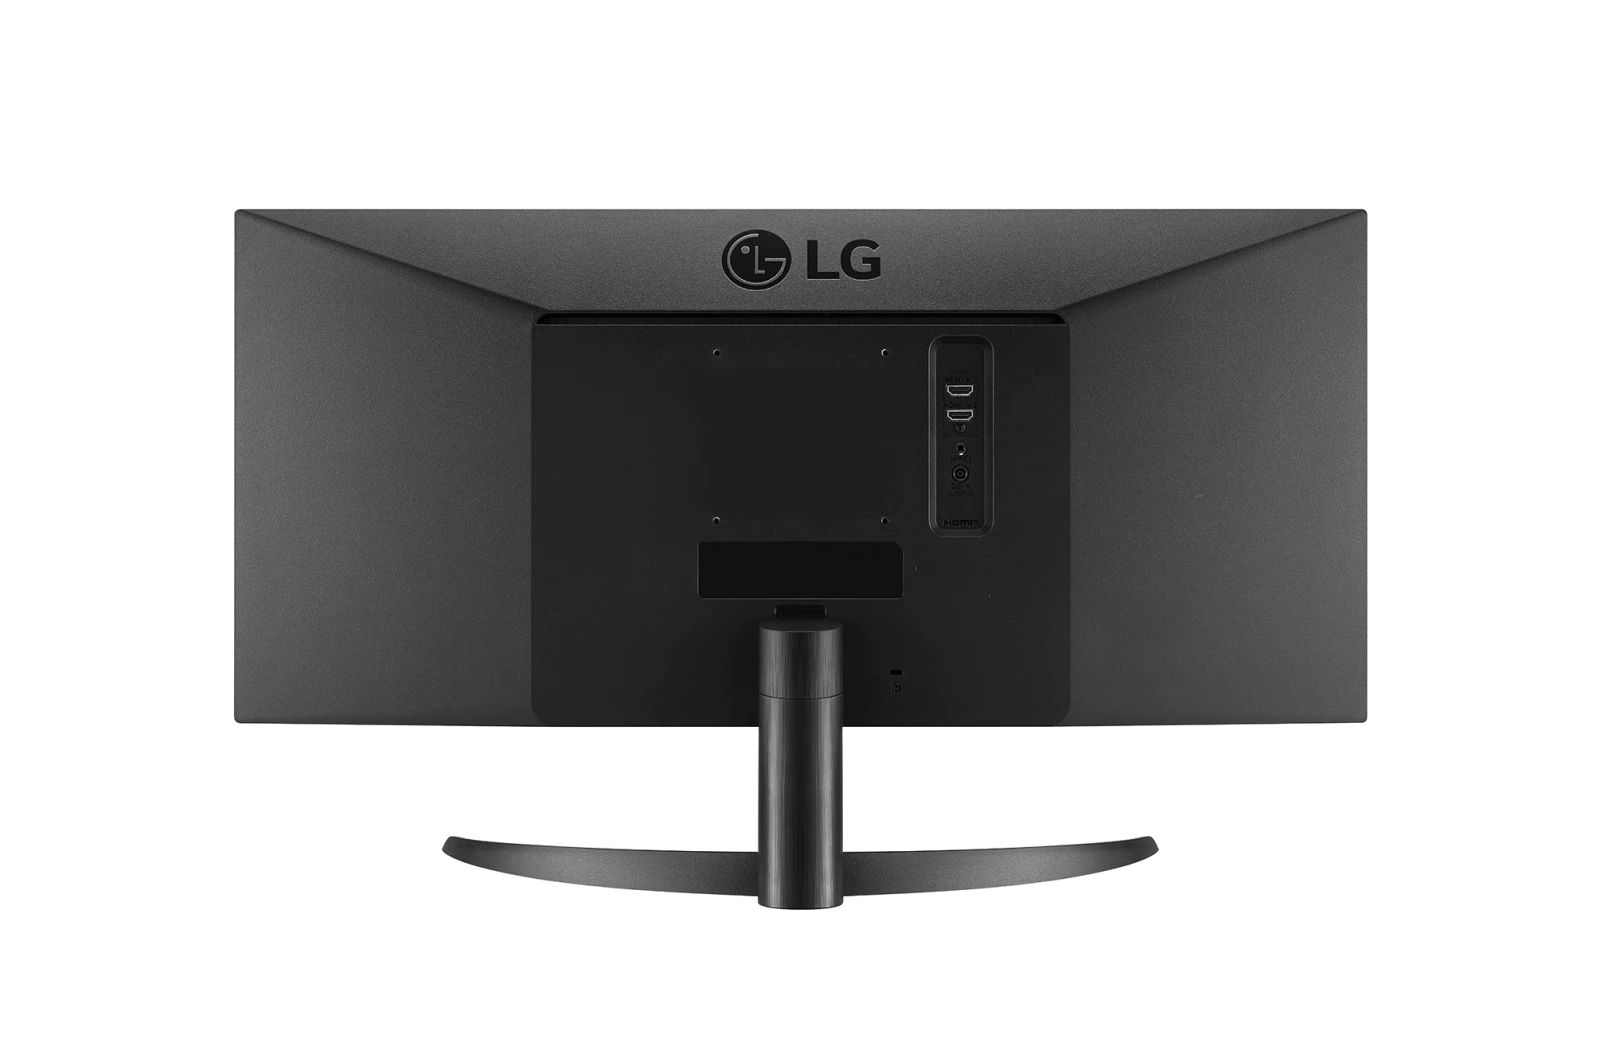  29" LG UltraWide 29WP500-B